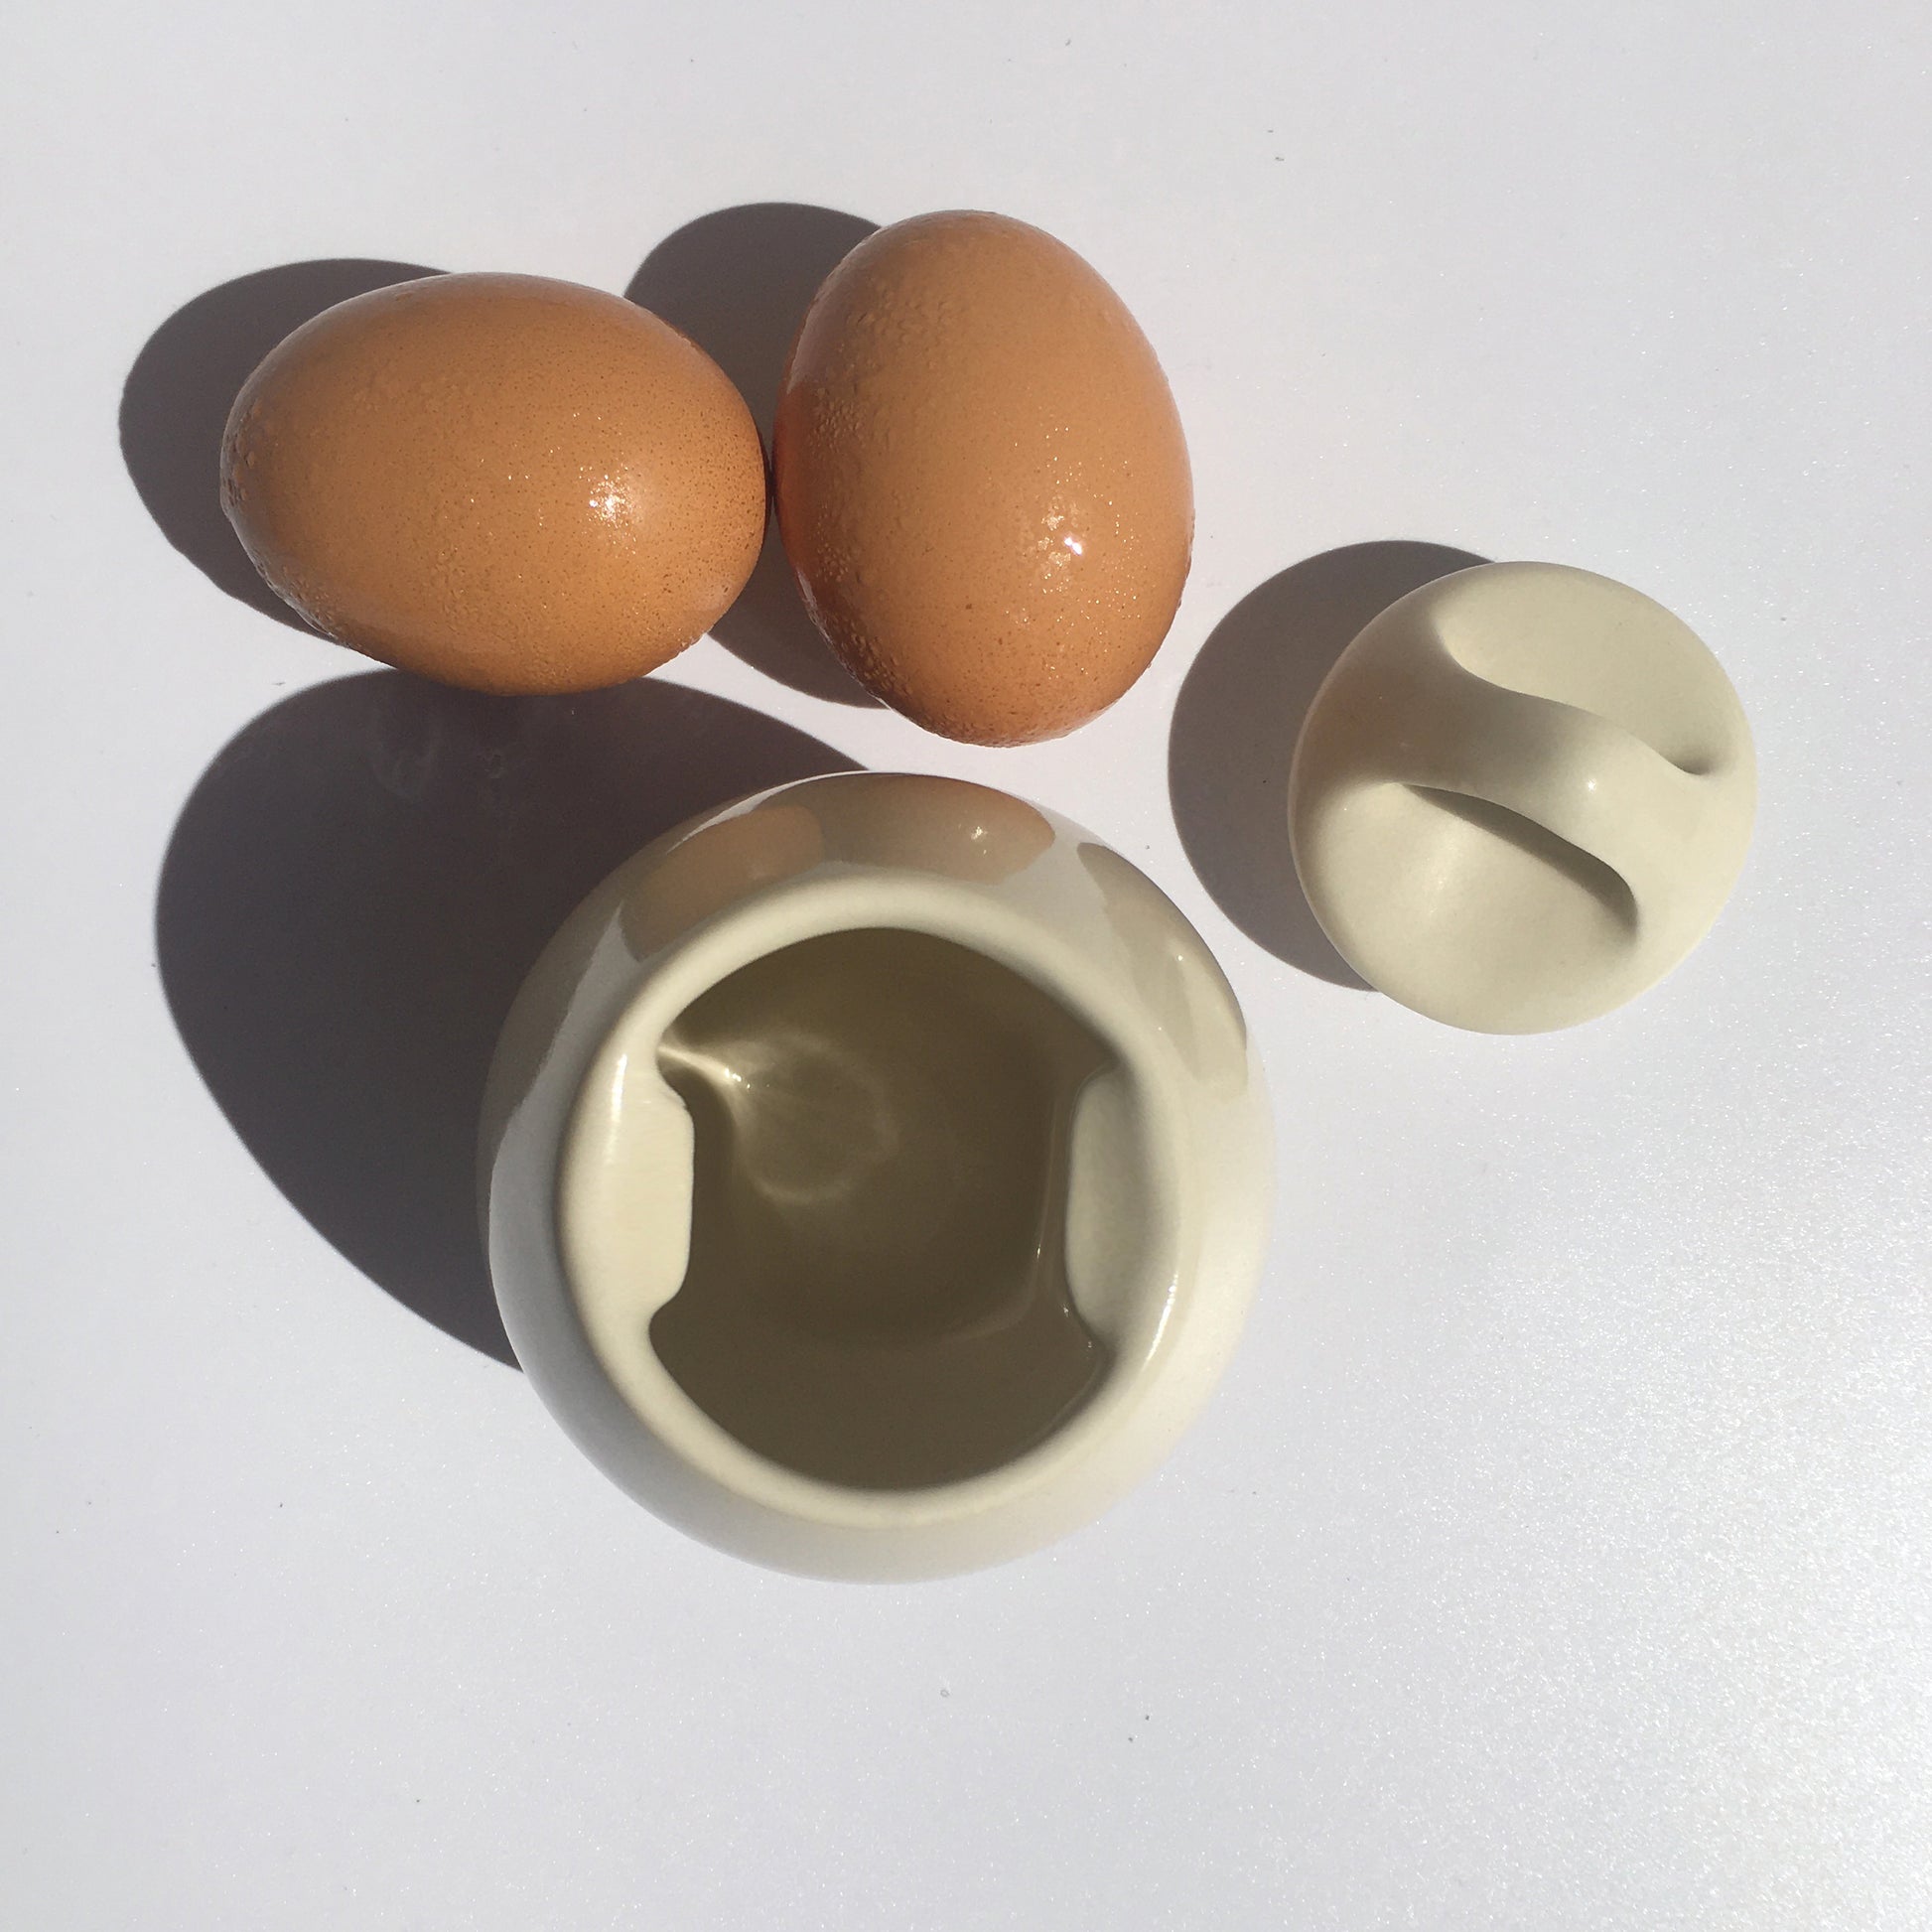 AggCoddler Small Julia Porcelain Multi-Purpose Gourmet Egg Cooker, 1-Egg Capacity